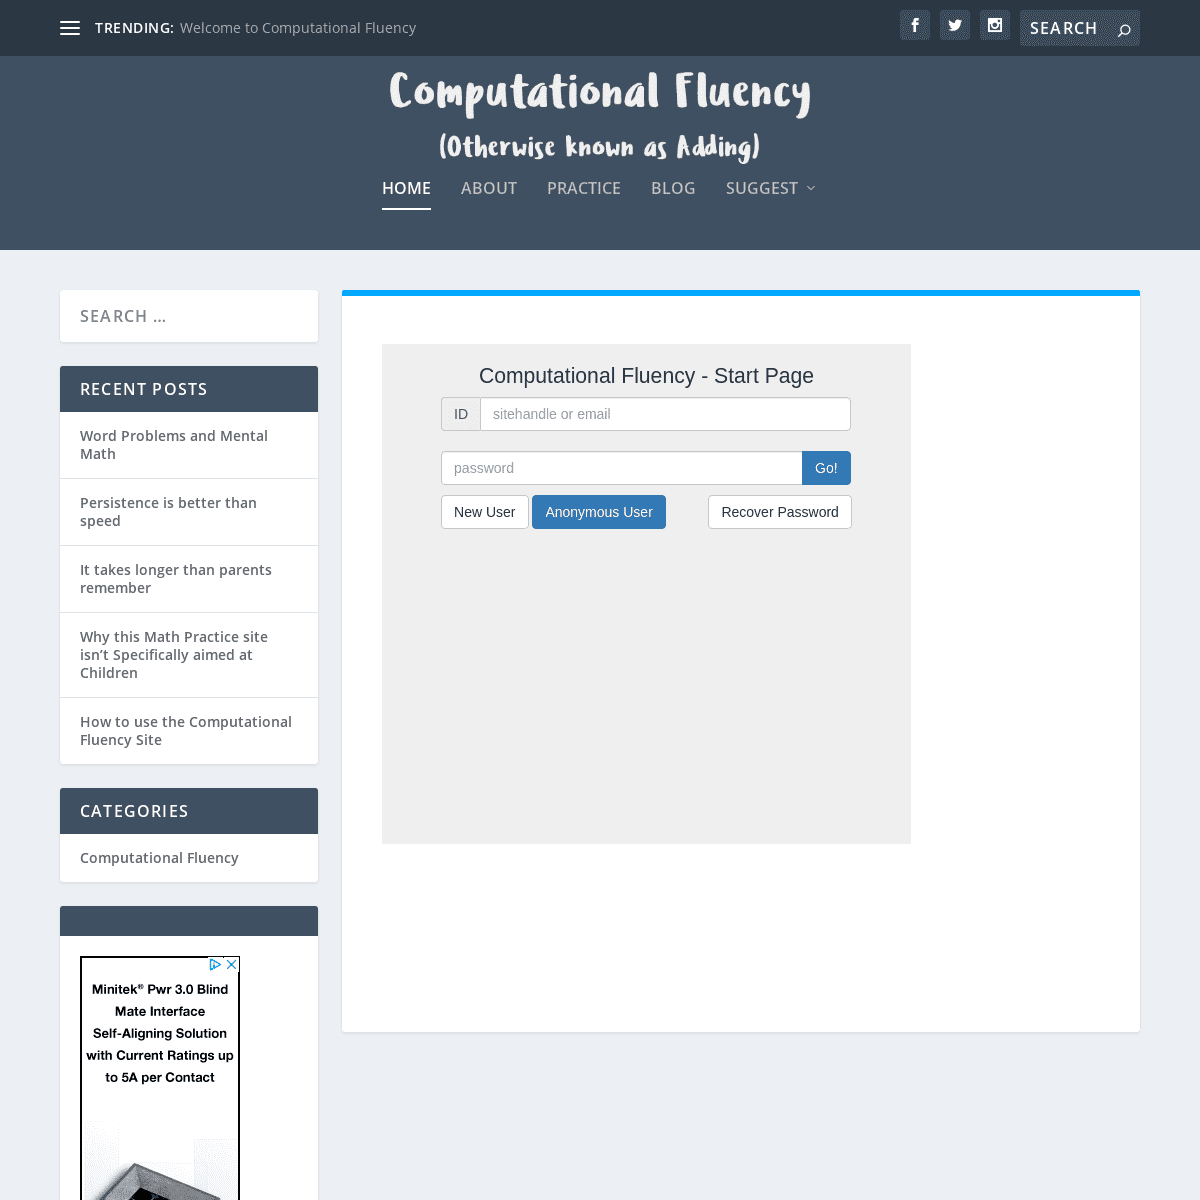 A complete backup of computationalfluency.com